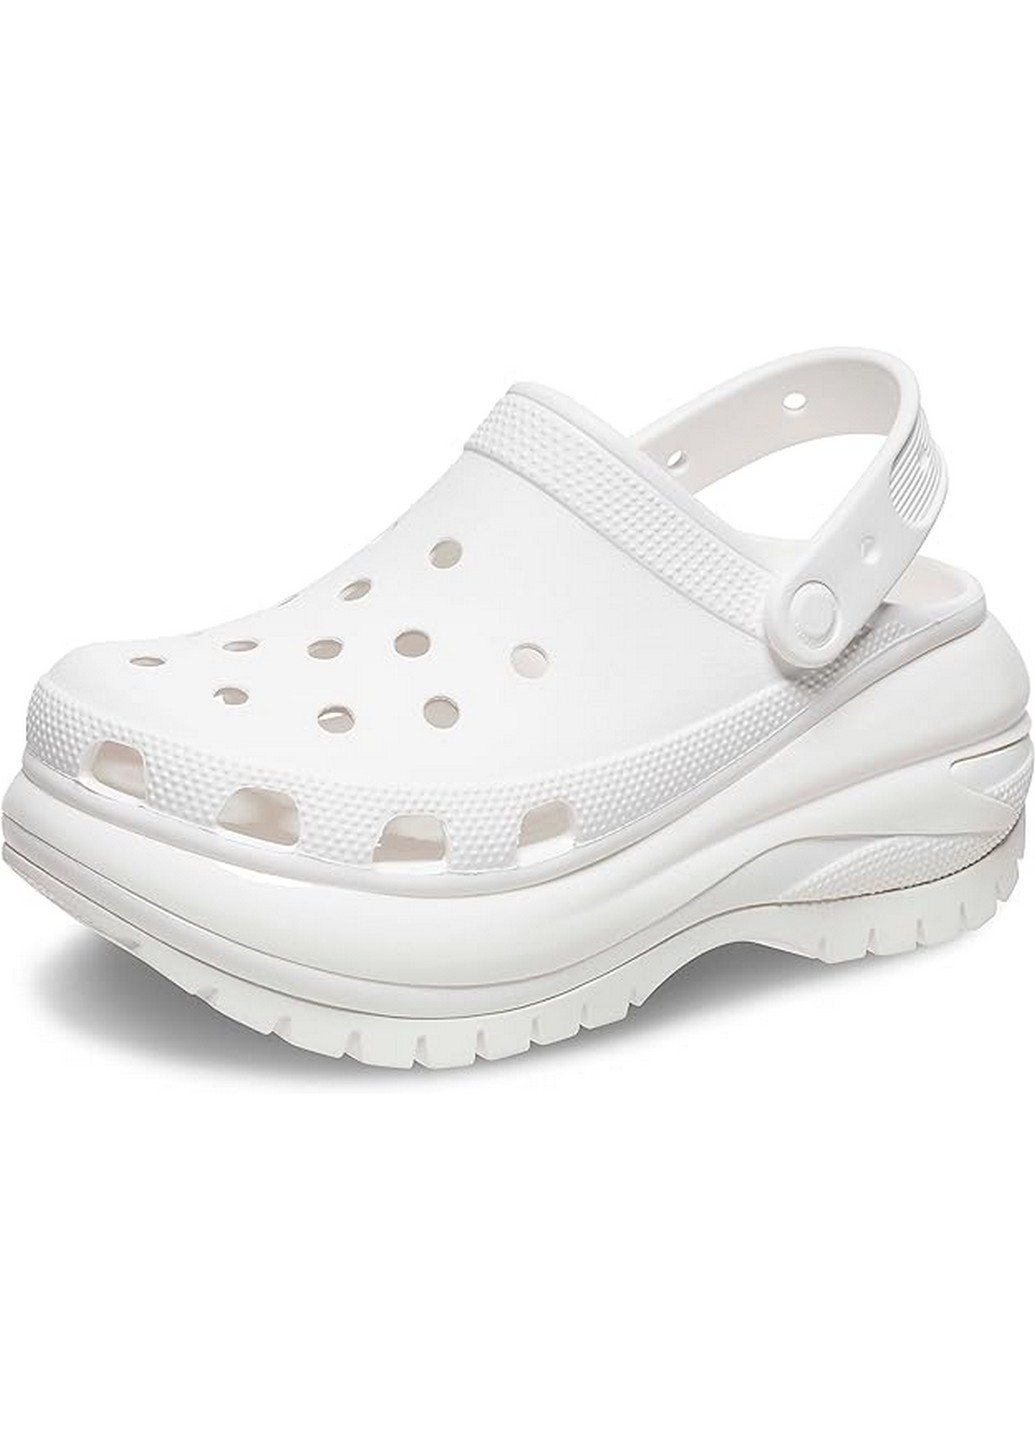 Белые сабо кроксы Crocs